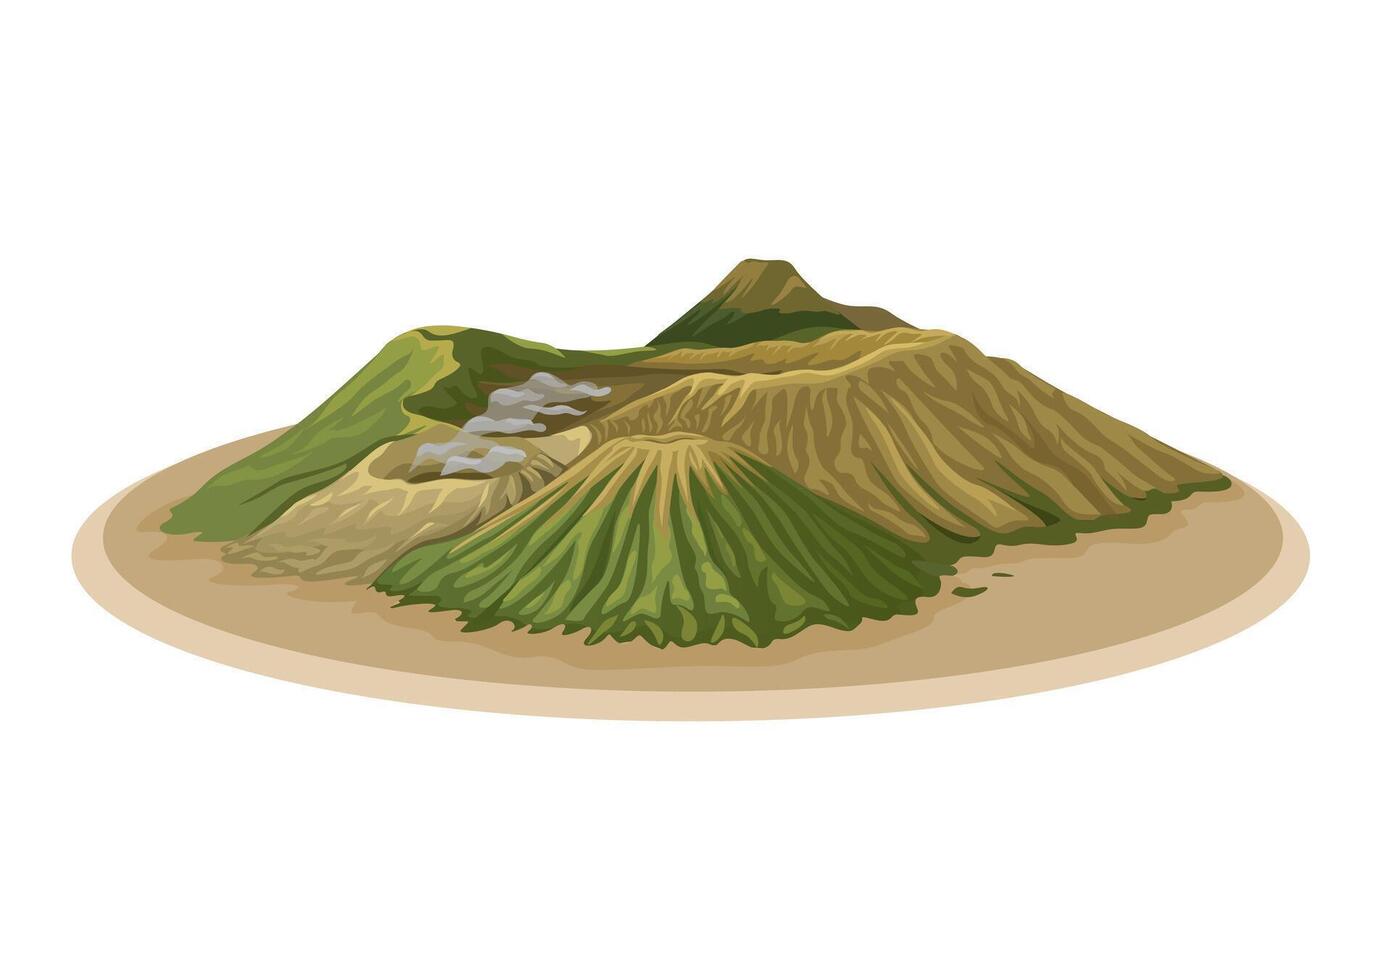 bromo montagna Indonesia illustrazione vettore